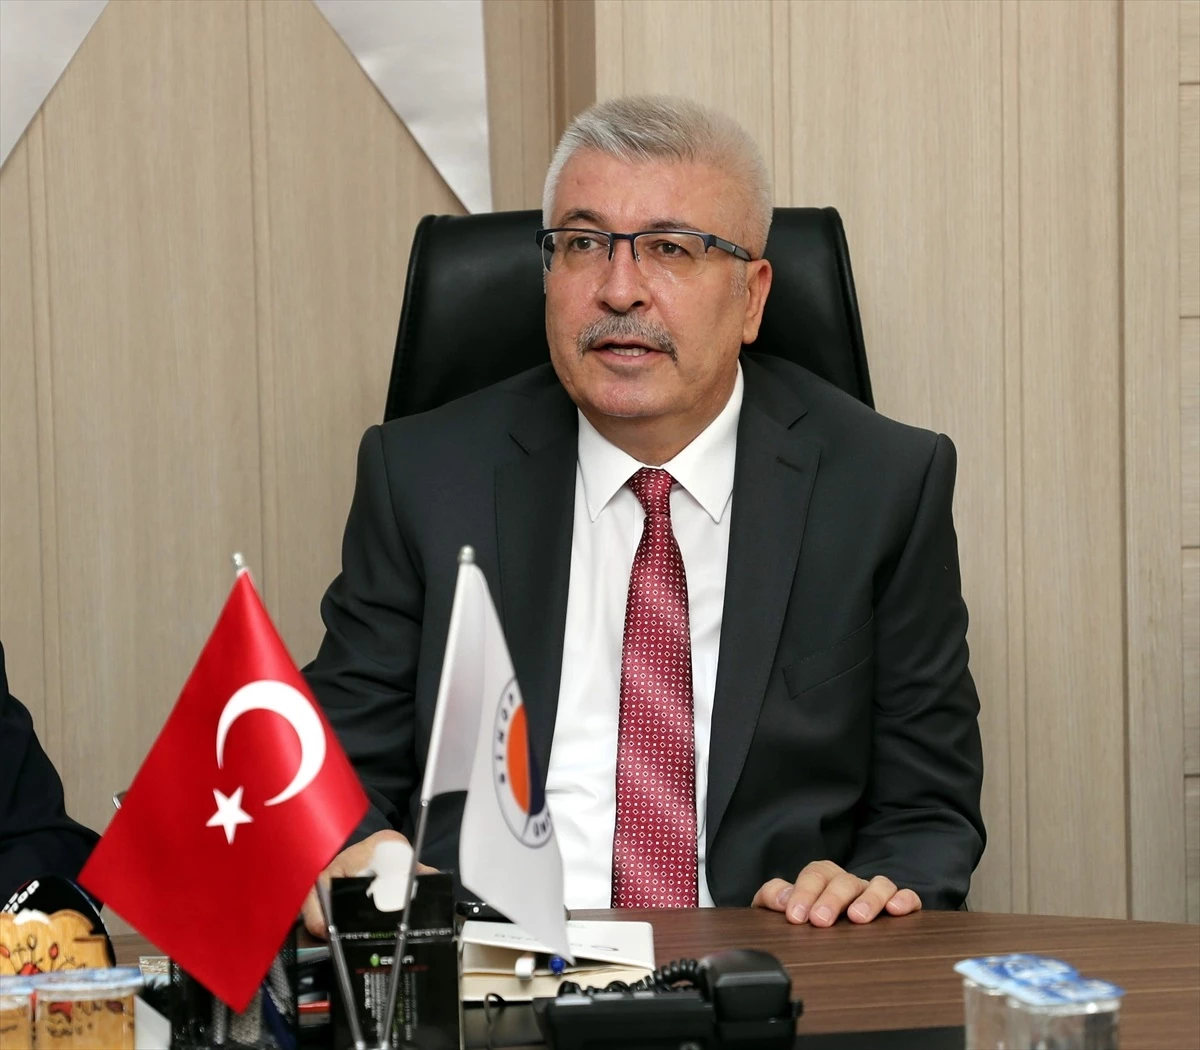 Konya Selçuk Üniversitesi Teknoloji Fakültesi Dekanı Prof. Dr. Şakir Taşdemir, Sinop Üniversitesi Rektörü olarak atandı